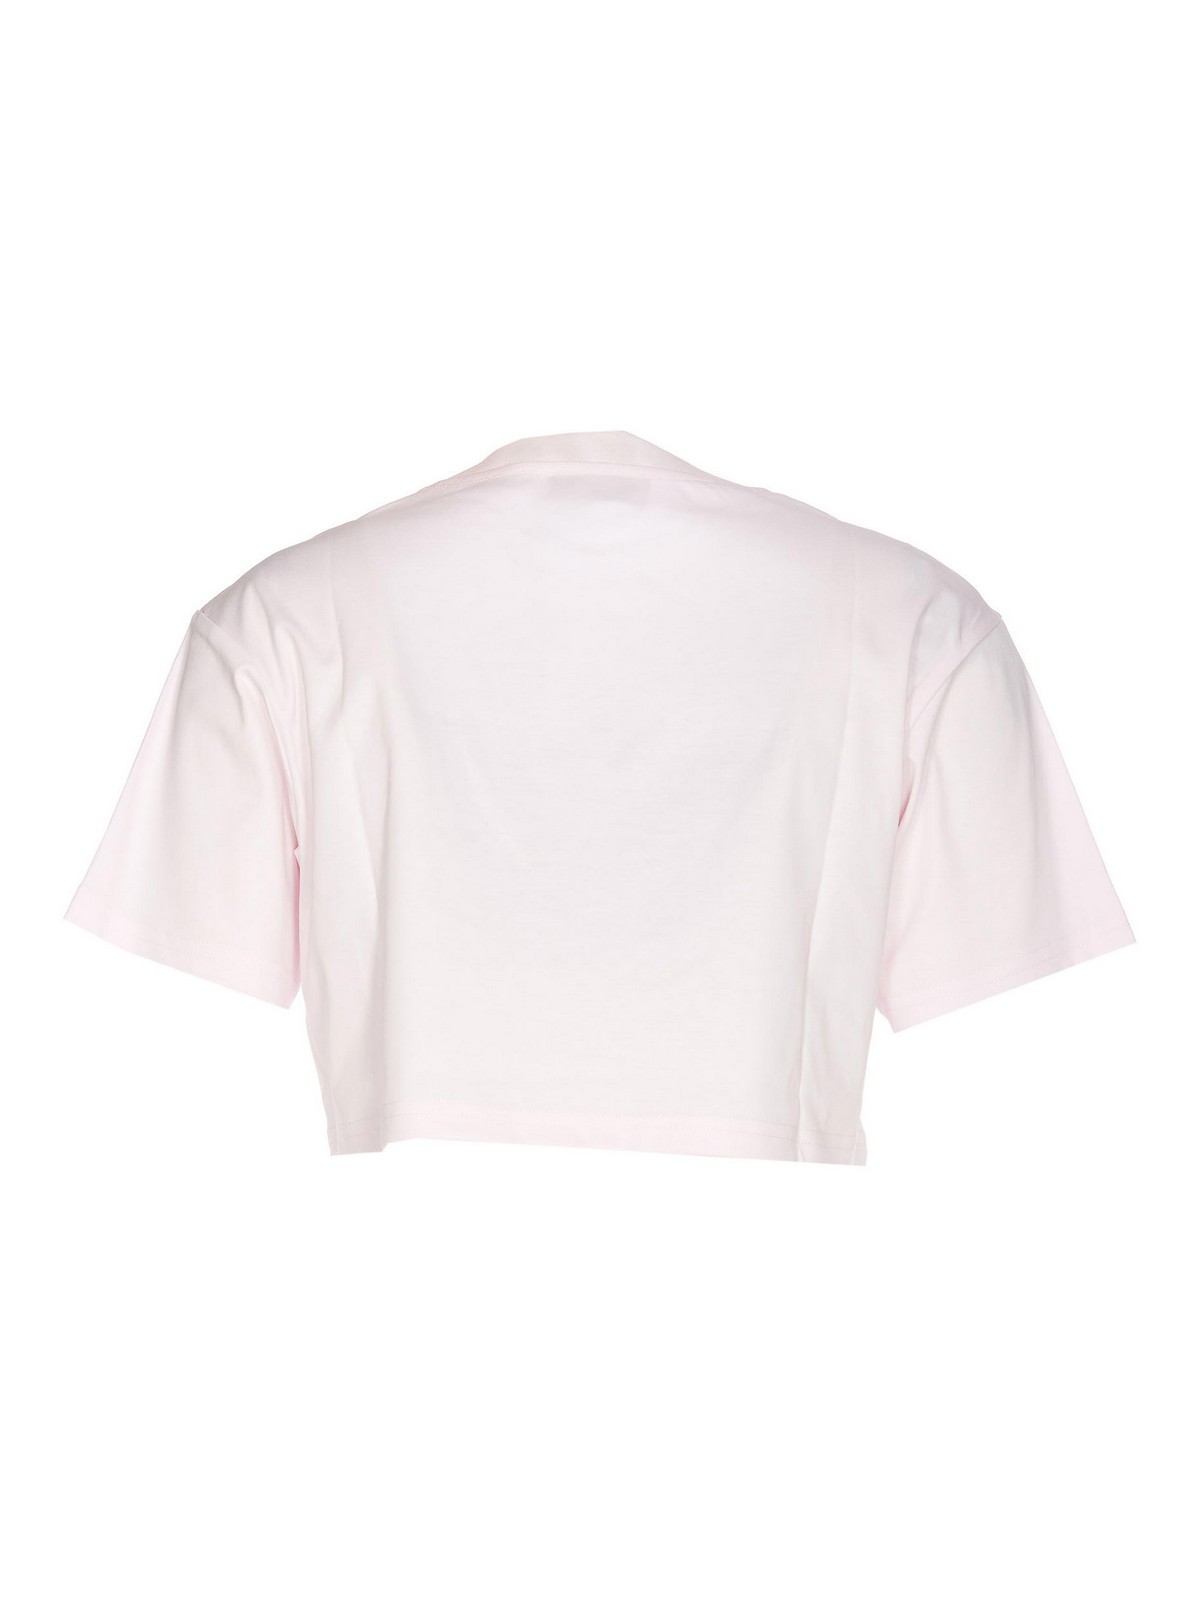 Shop Lanvin Camiseta - Color Carne Y Neutral In Nude & Neutrals